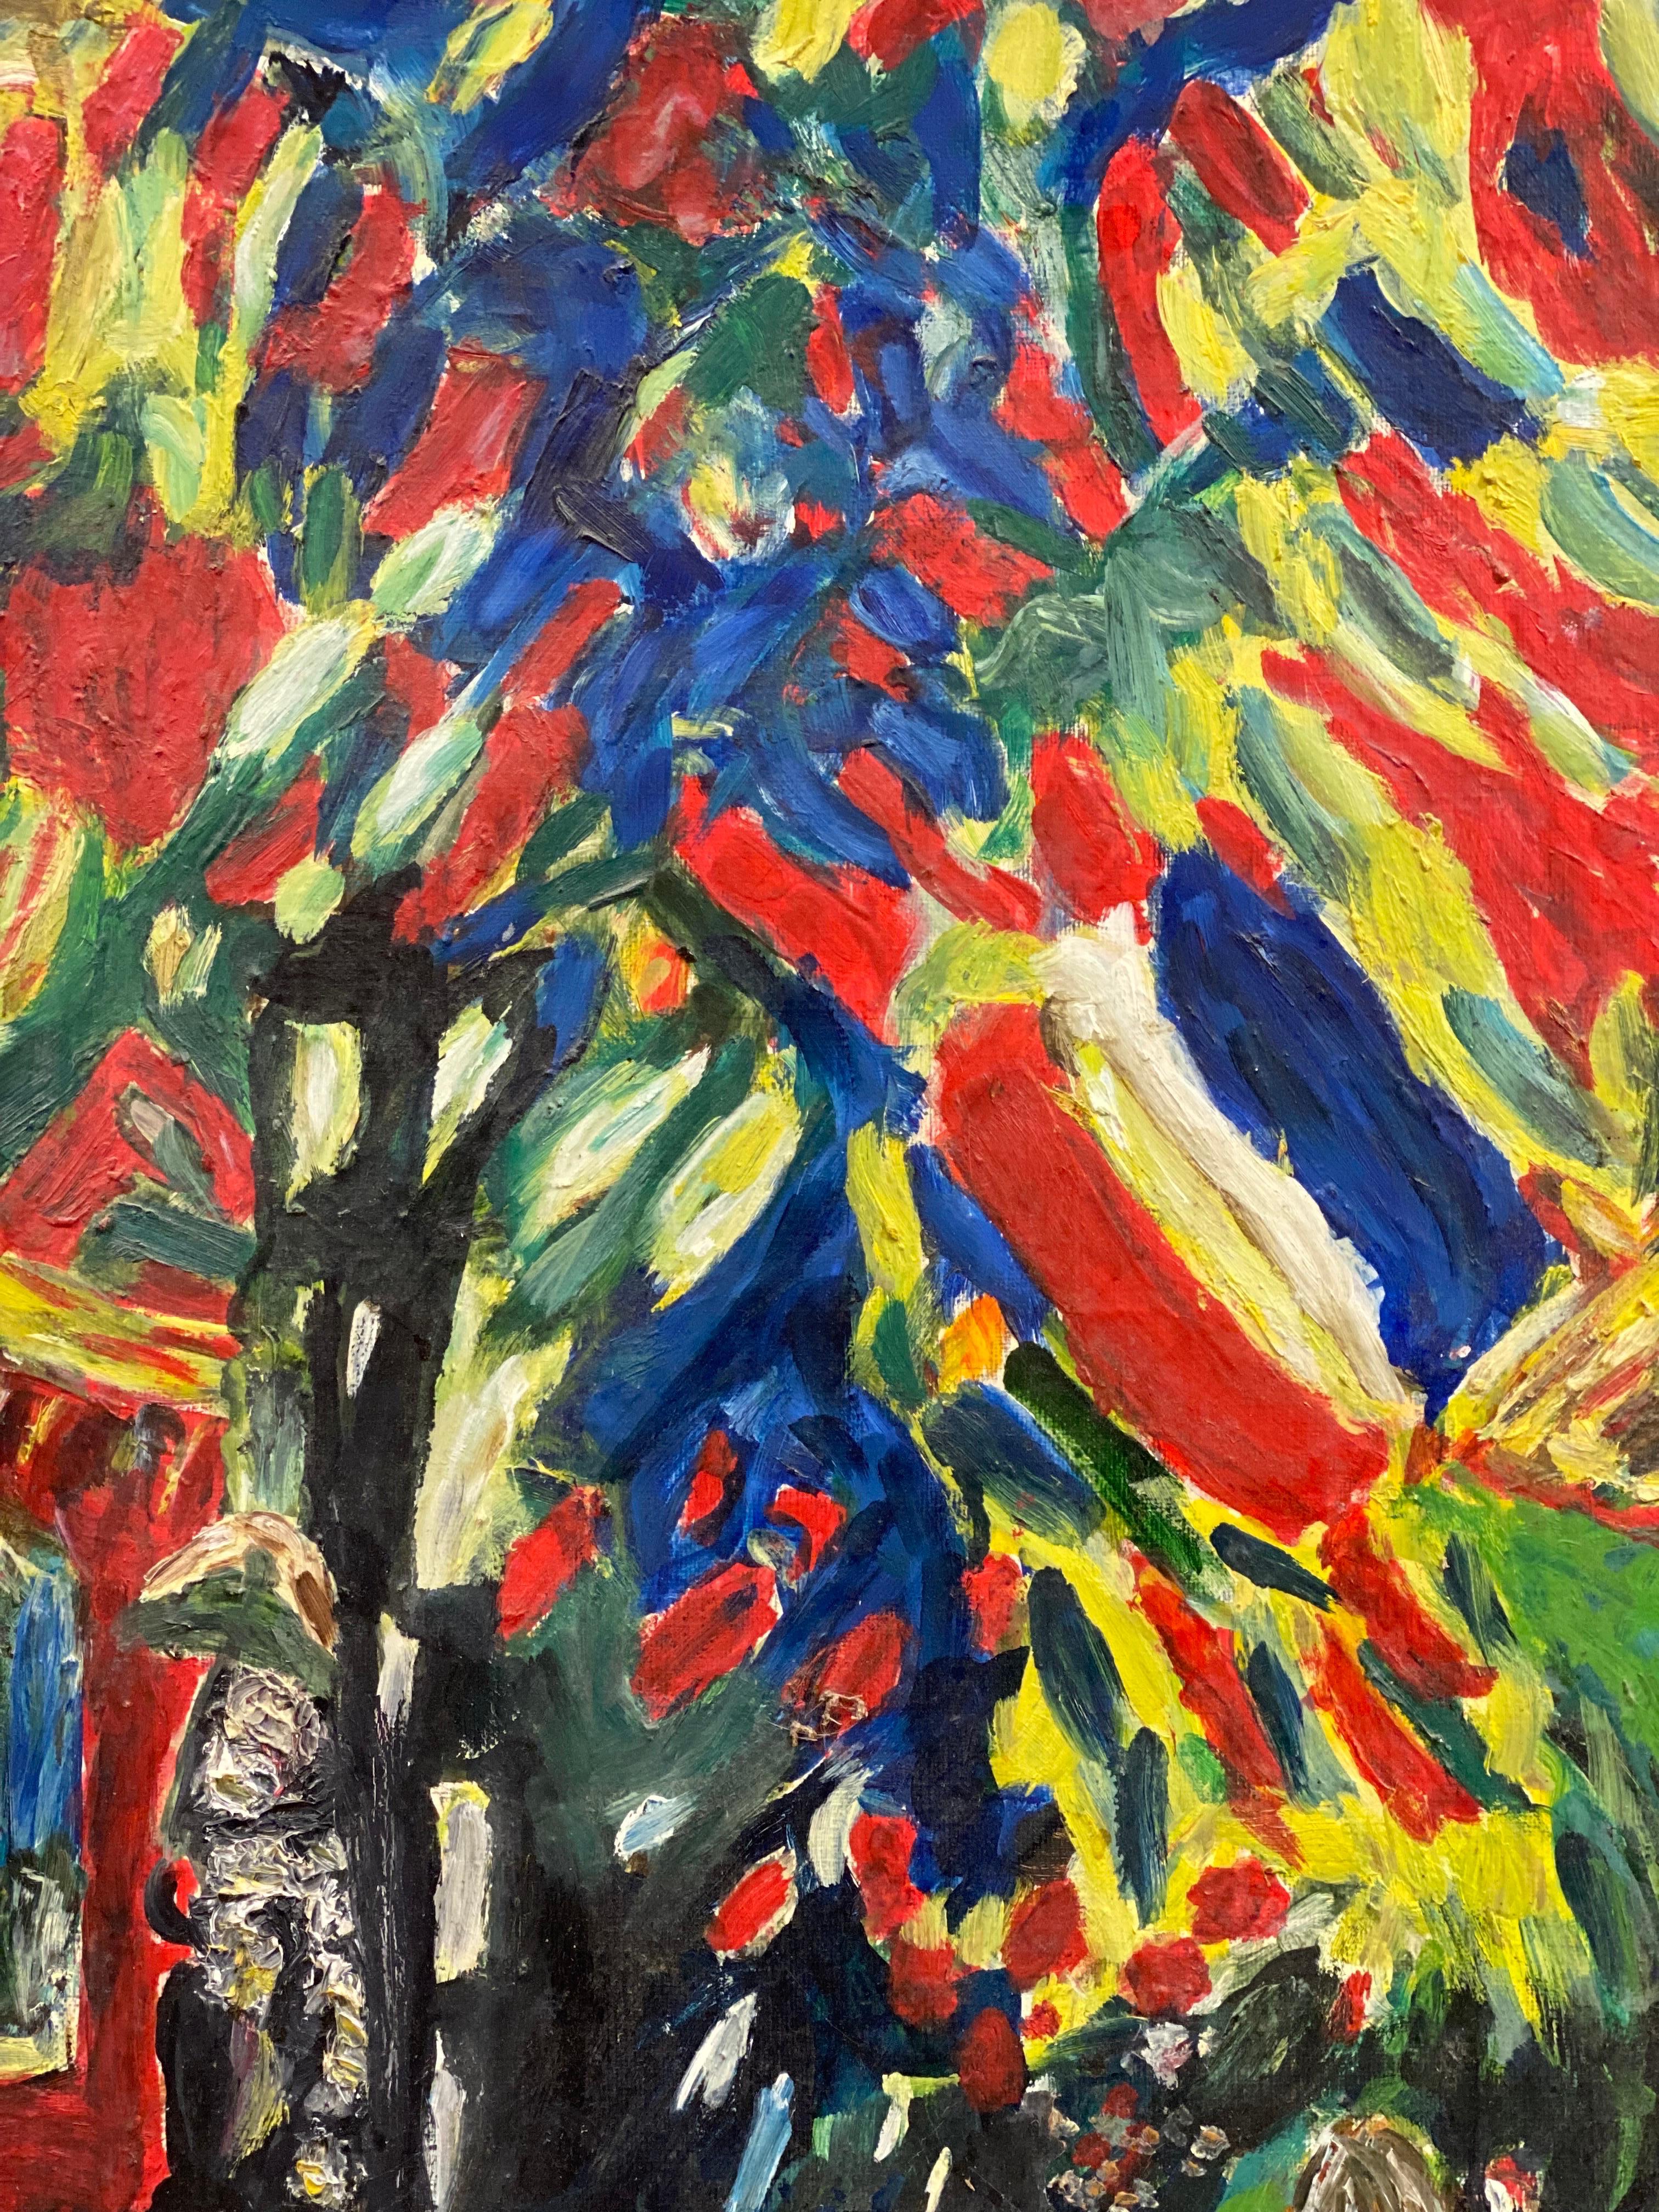 Peinture à l'huile sur toile fauviste française du 20e siècle, colorée, représentant des personnages dans une rue - Painting de French Fauvist